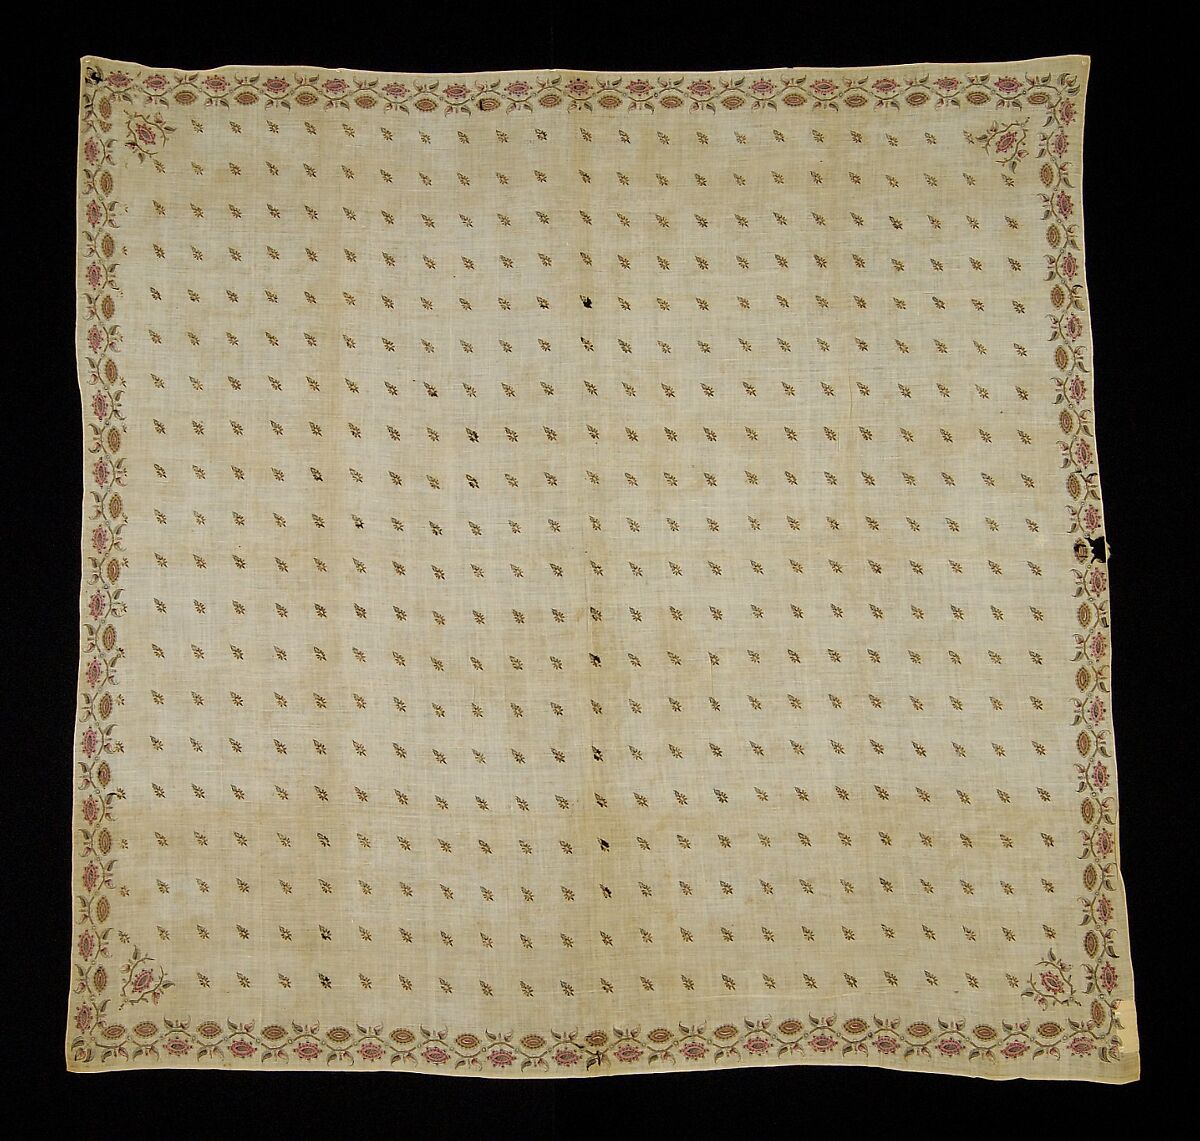 Kerchief, Cotton, probably American 